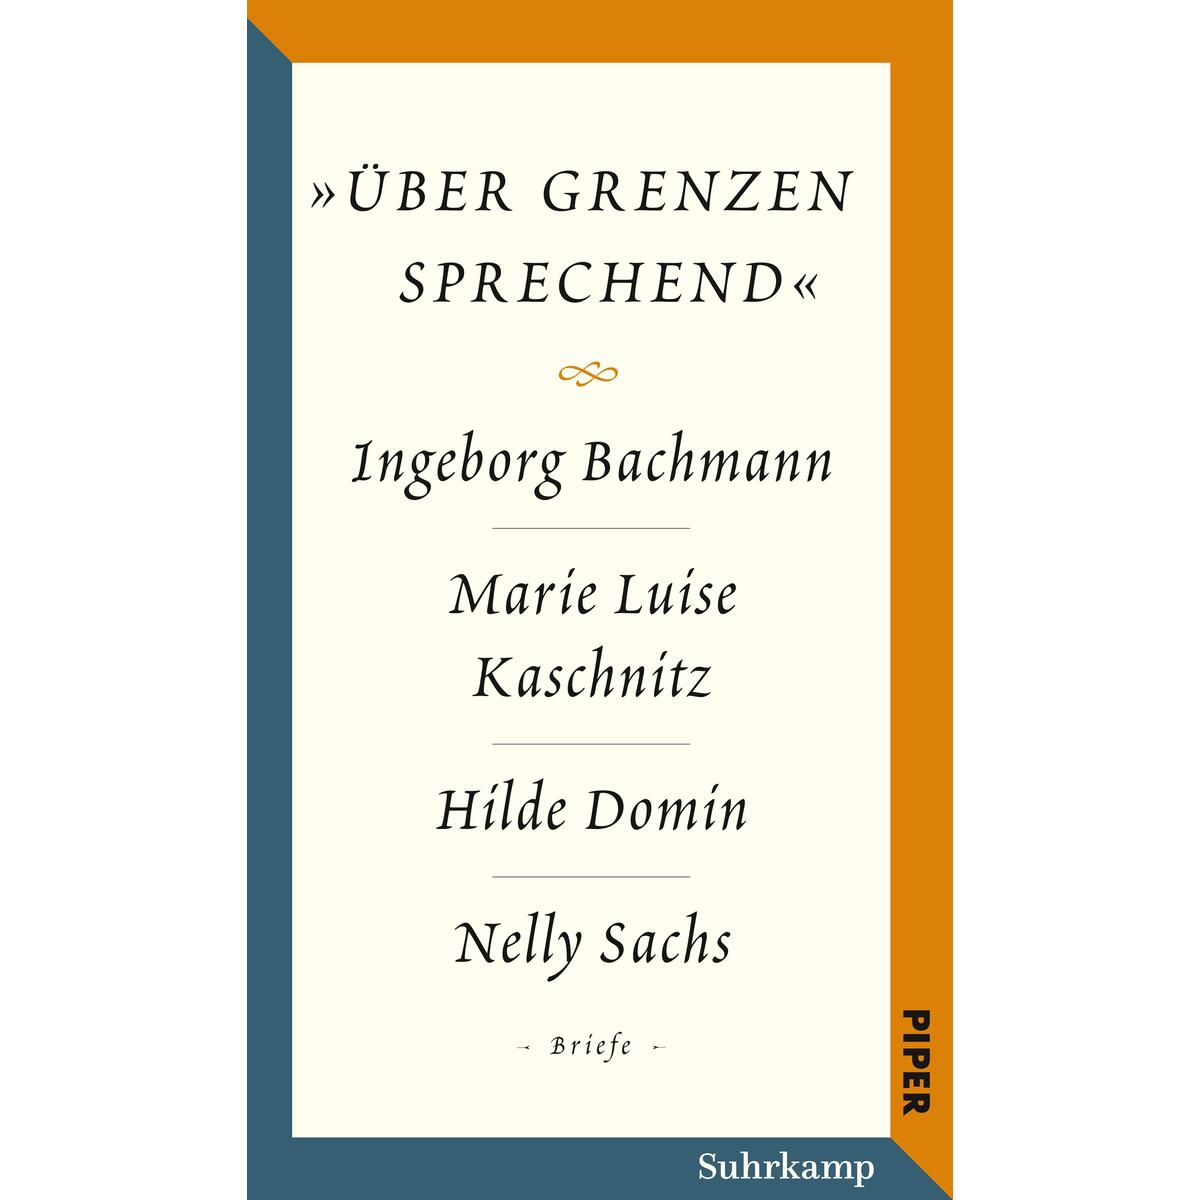 Salzburger Bachmann Edition von Suhrkamp Verlag AG